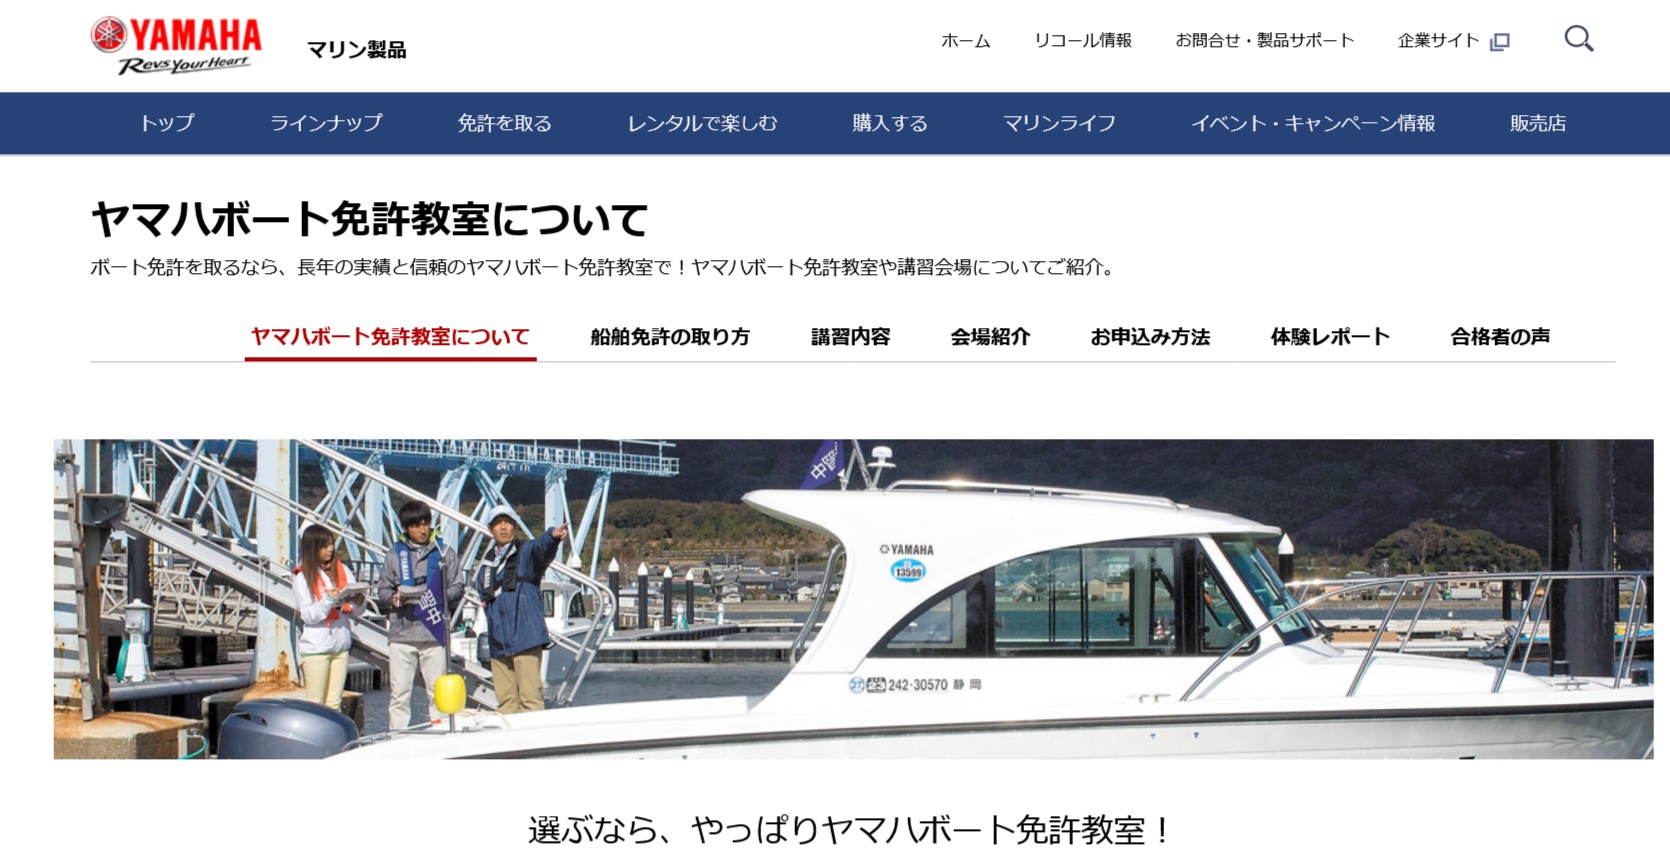 大阪府 リブレボート免許教室で小型船舶免許を取得